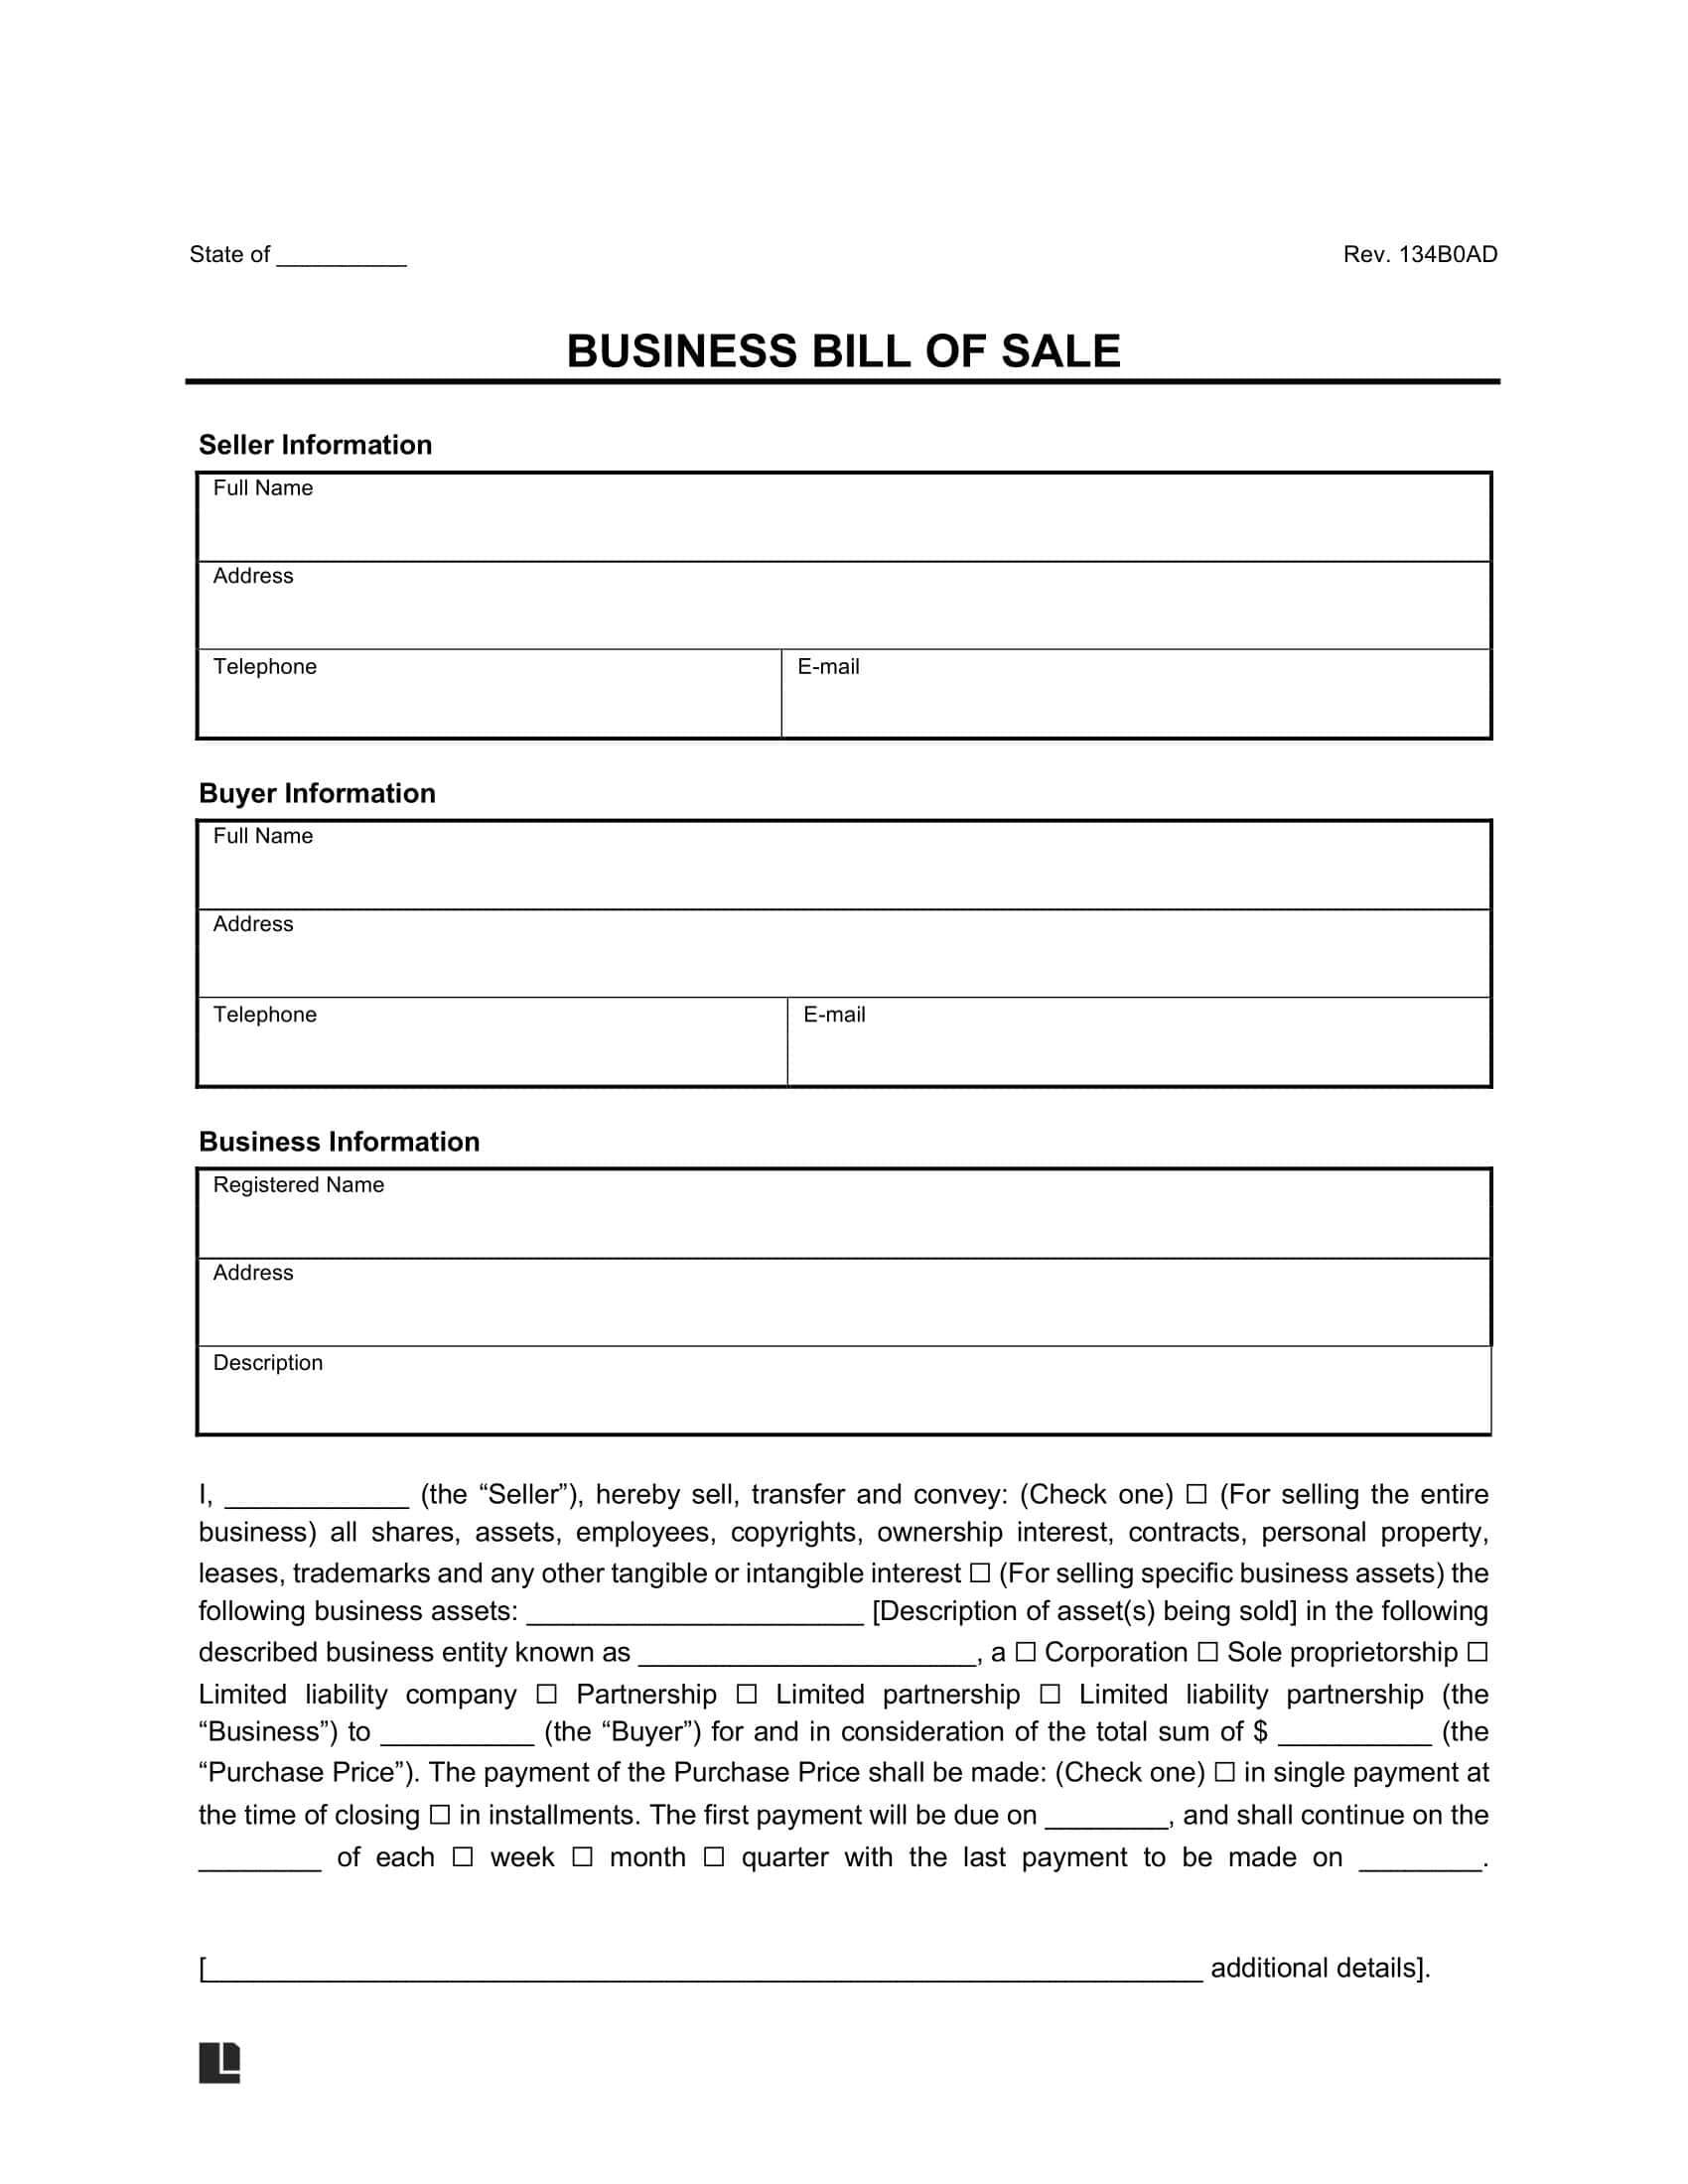 Business Bill of Sale screenshot